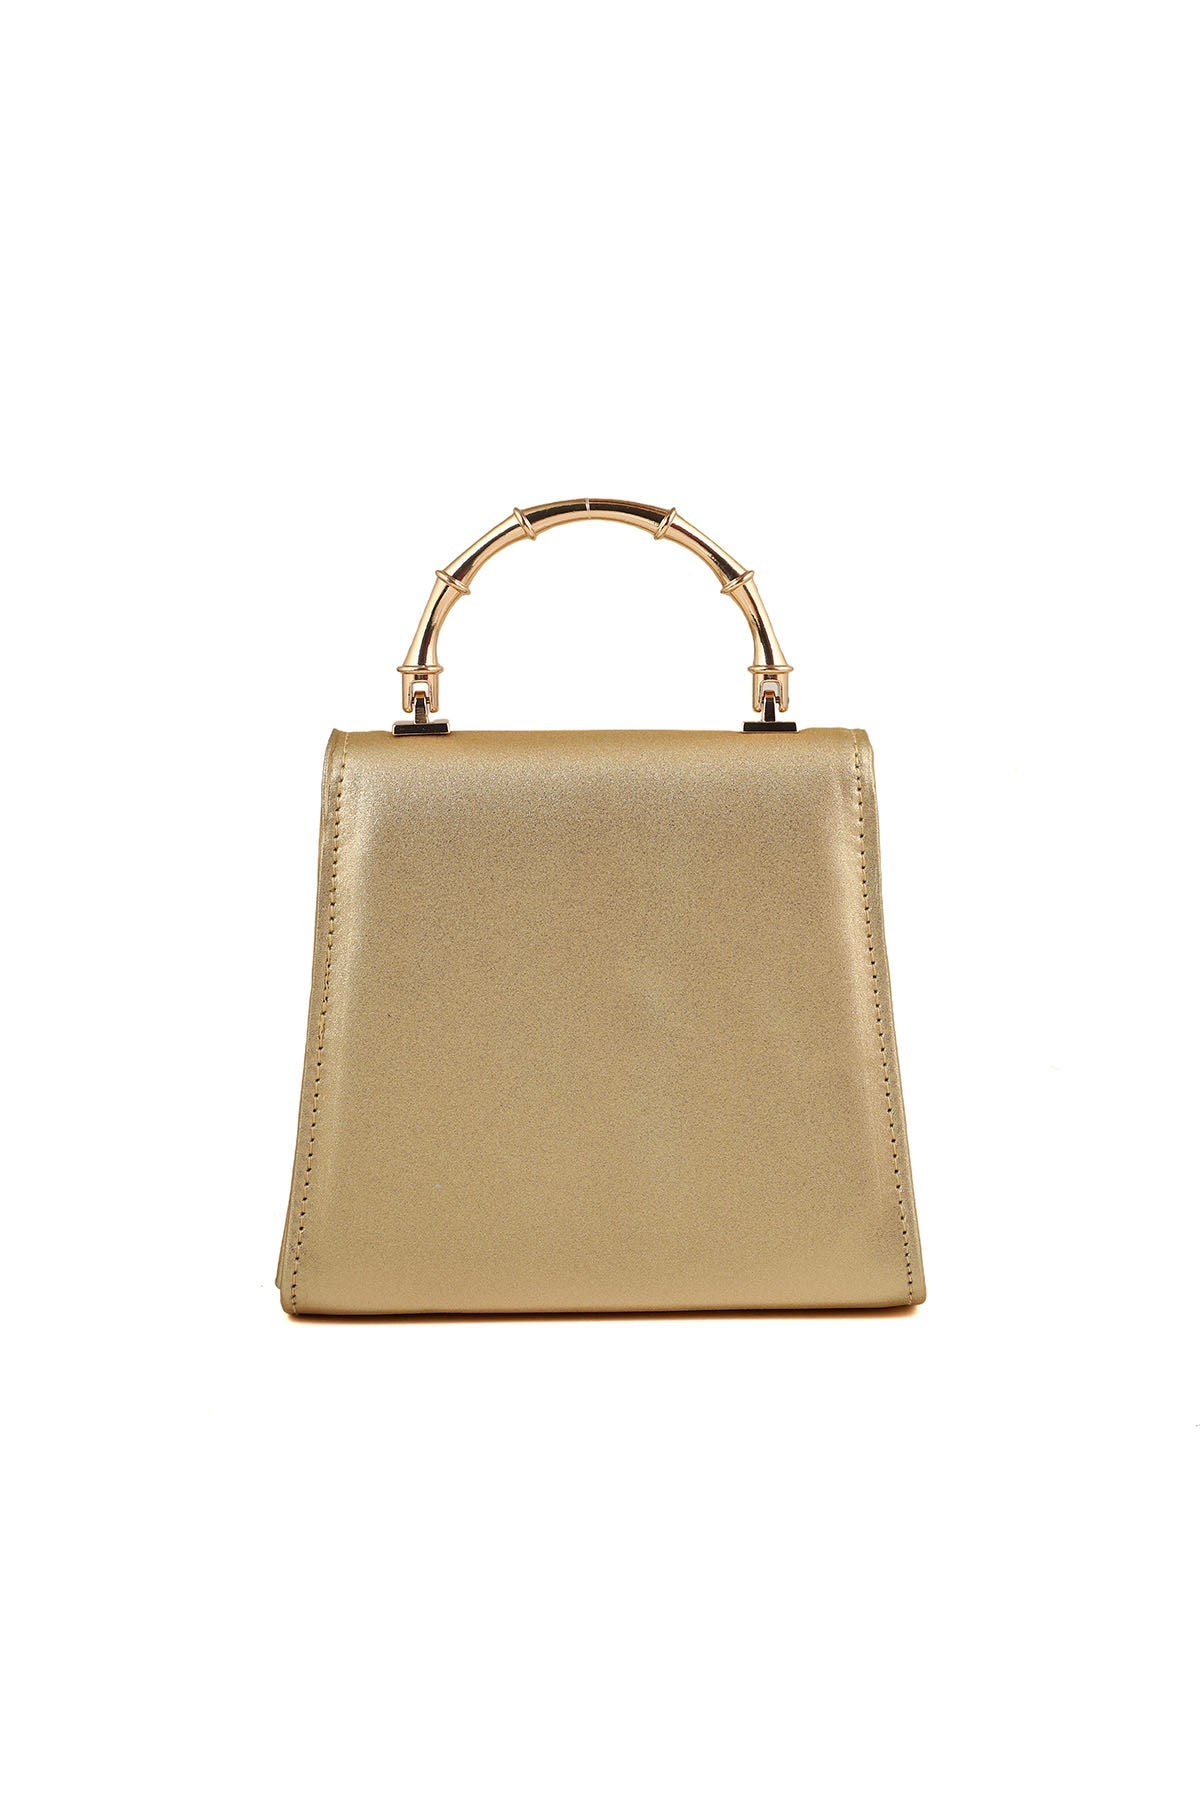 Top Handle Hand Bags B21592-Golden